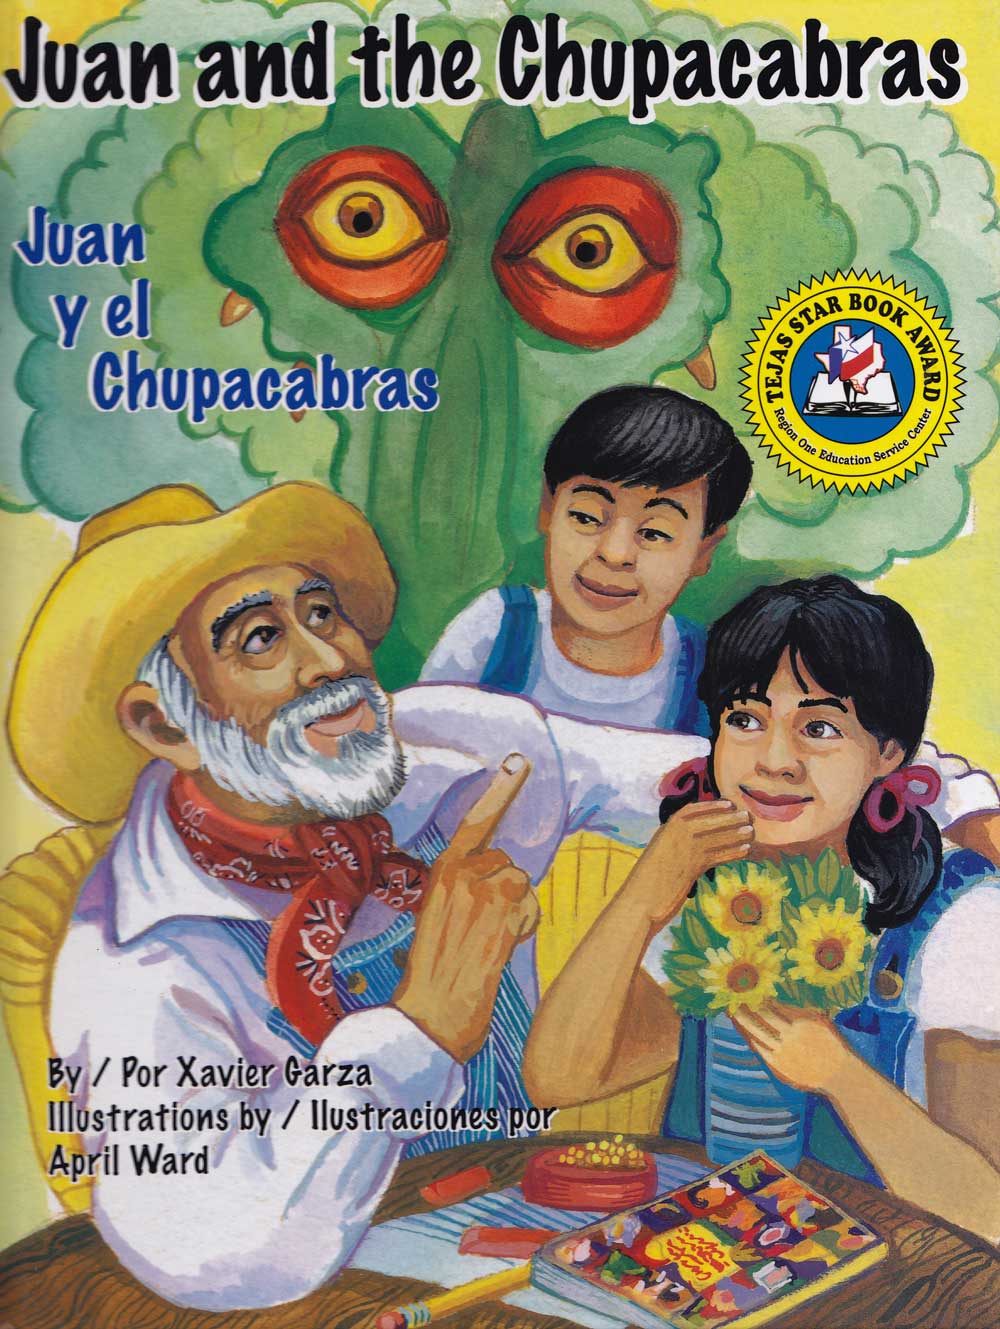 Juan y el Chupacabras - Juan and the Chupacabras, Del Sol Books